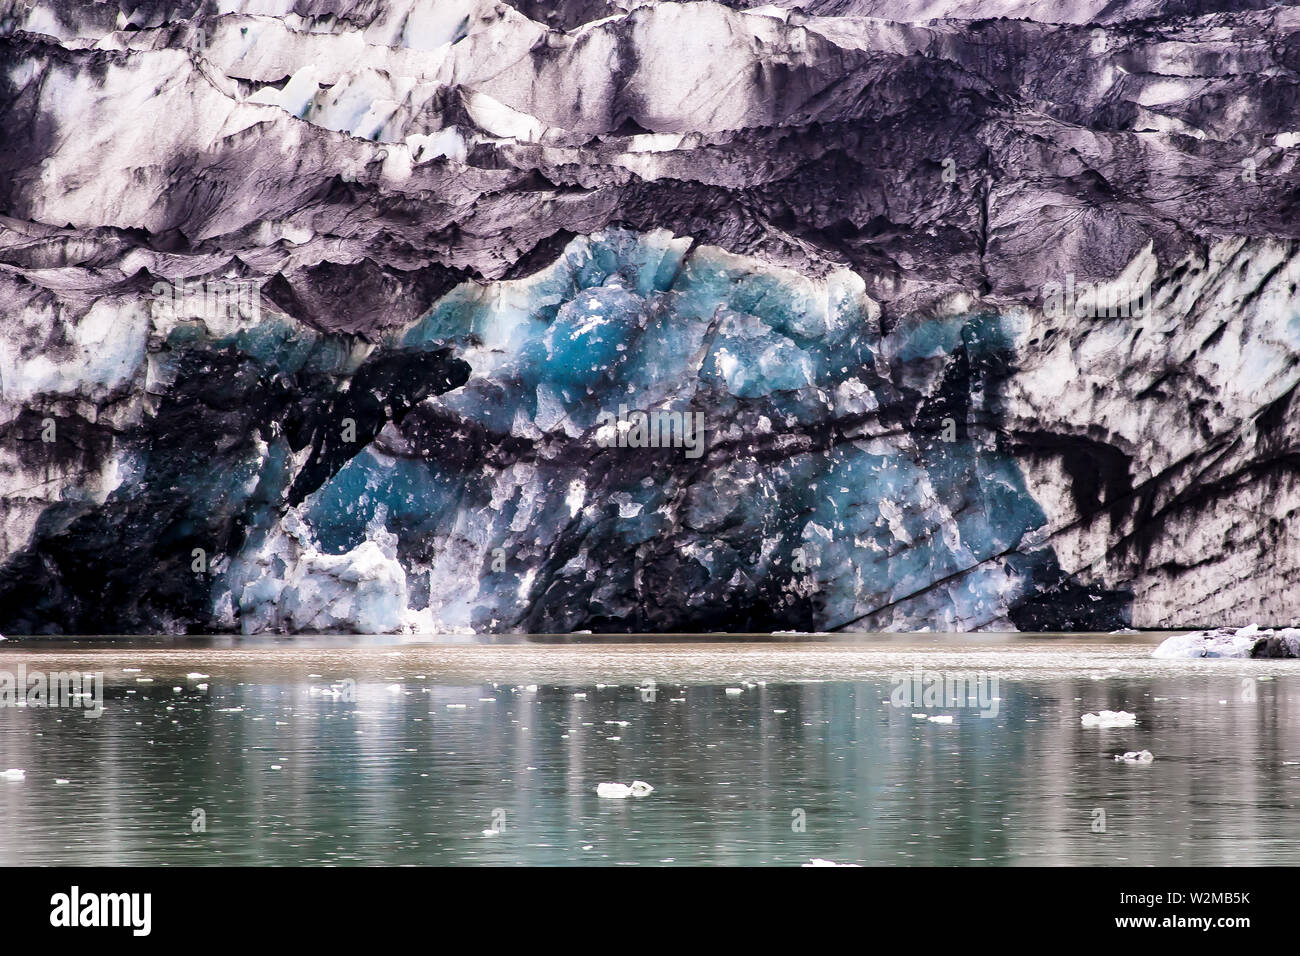 Jokulsarlon Laguna di ghiaccio in Islanda. Il blu ghiaccio potrebbero essere oltre 1,000 anni, ora esposti come ghiacciaio Breiðamerkurjökull ritiri. Foto Stock